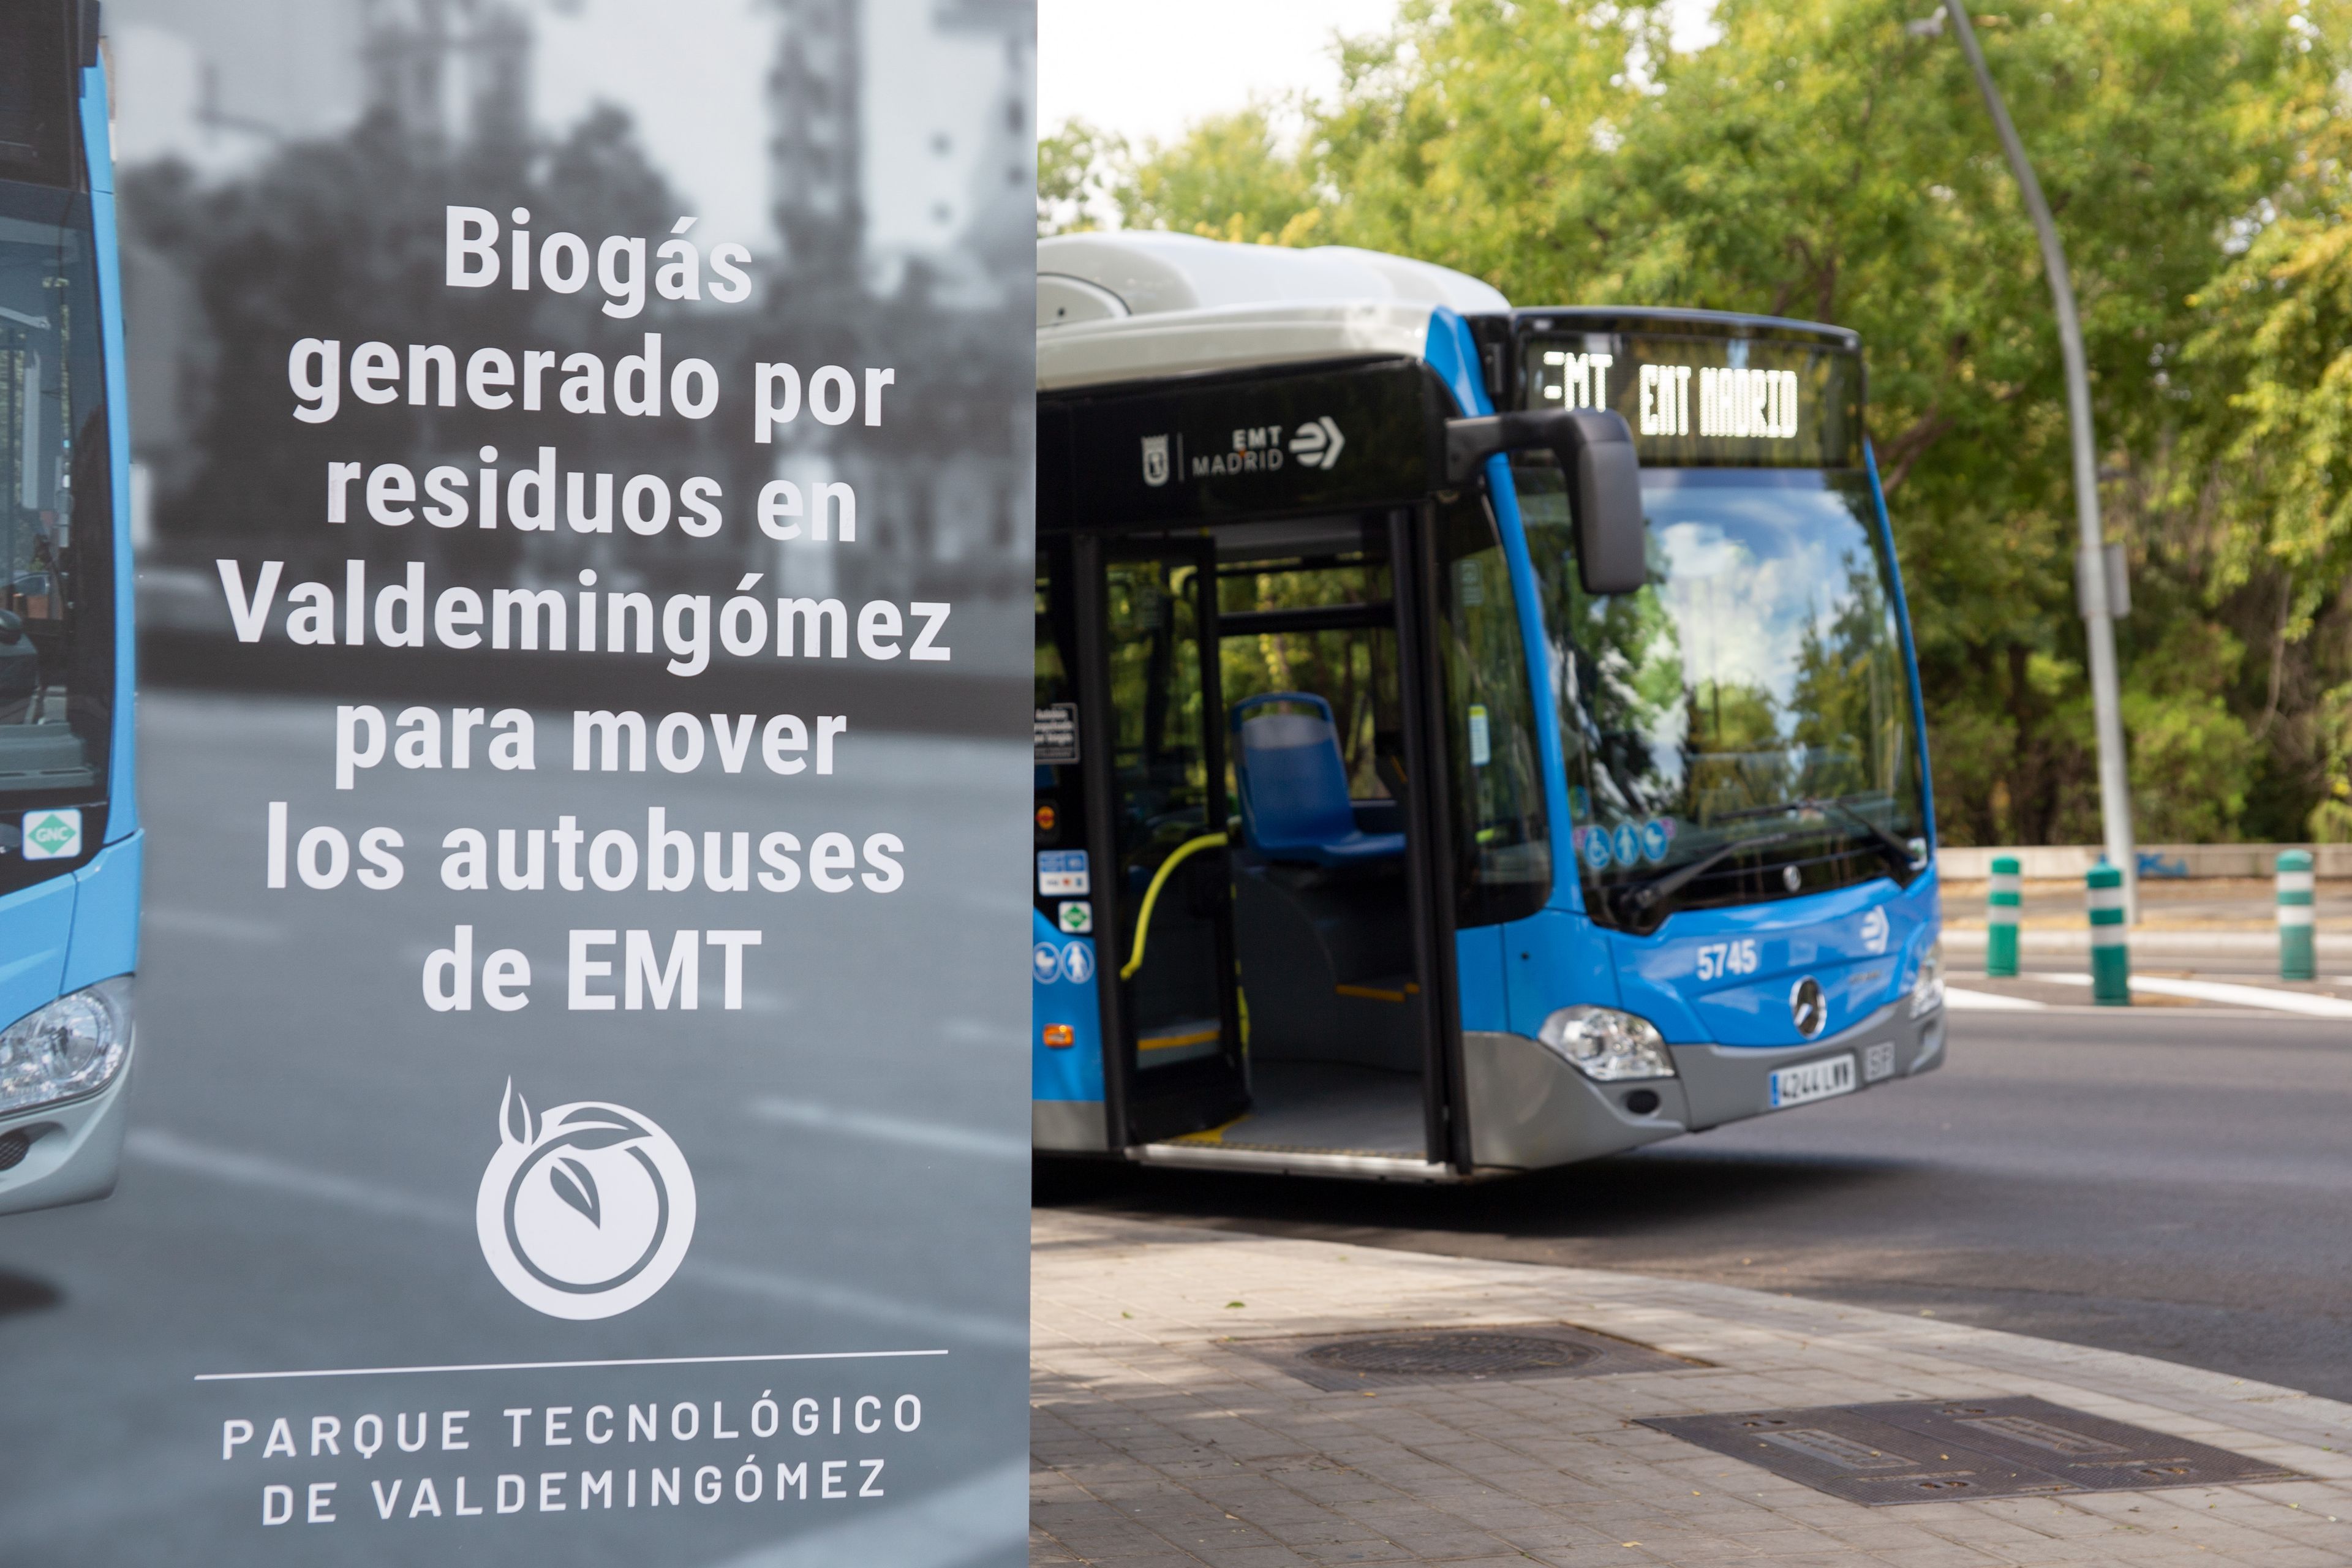 Los 20 autobuses de la Línea C1 de Madrid ya funcionan con Biogás. Foto: Madrid.es